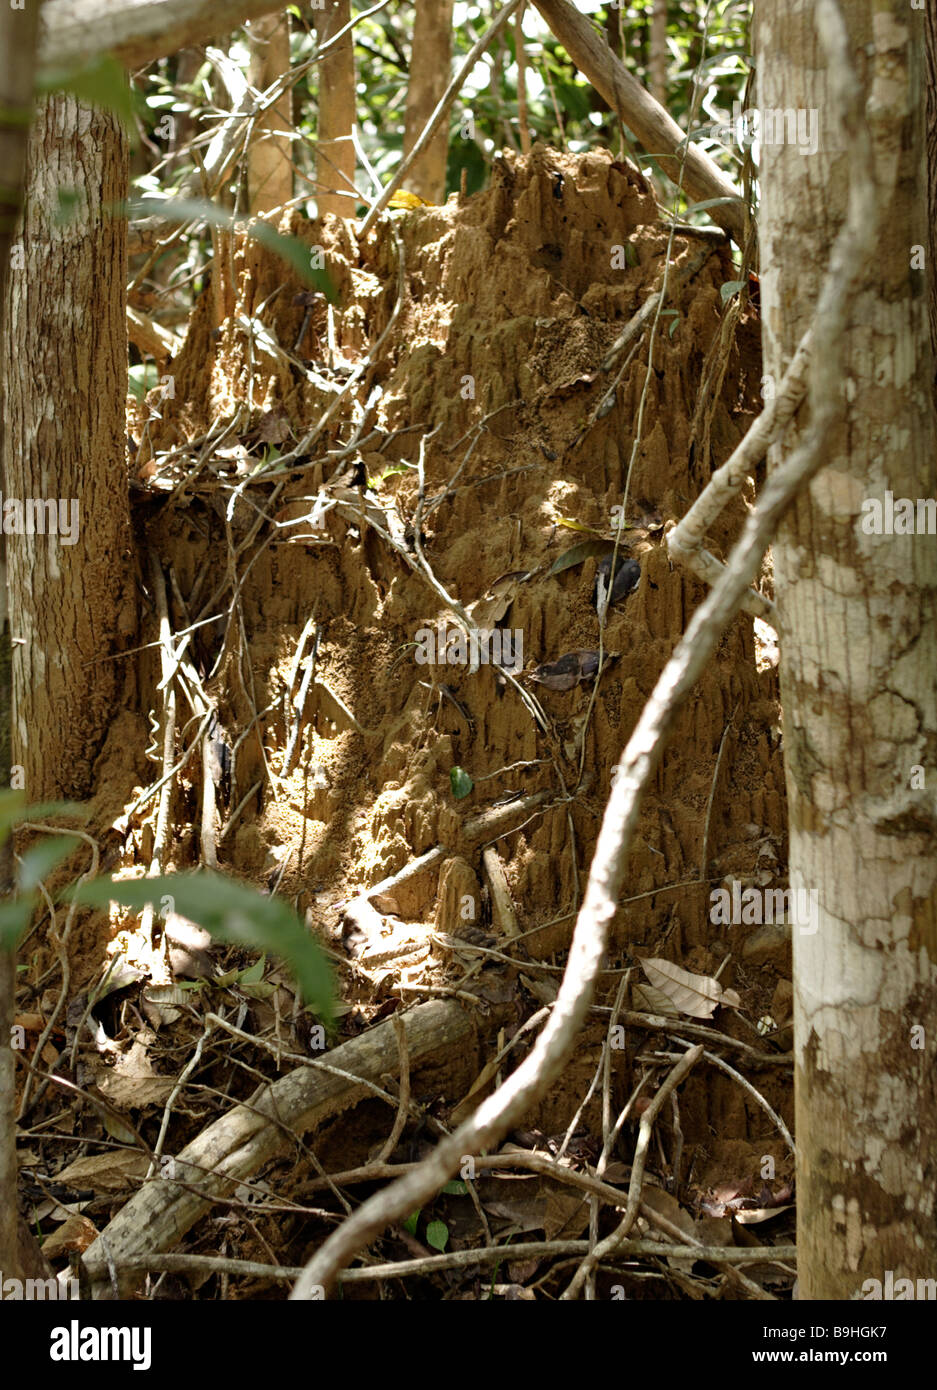 Termite Mound Atlantic Rainforest Mata Atlântica Ecoparque de Una Bahia Brazil South America Stock Photo